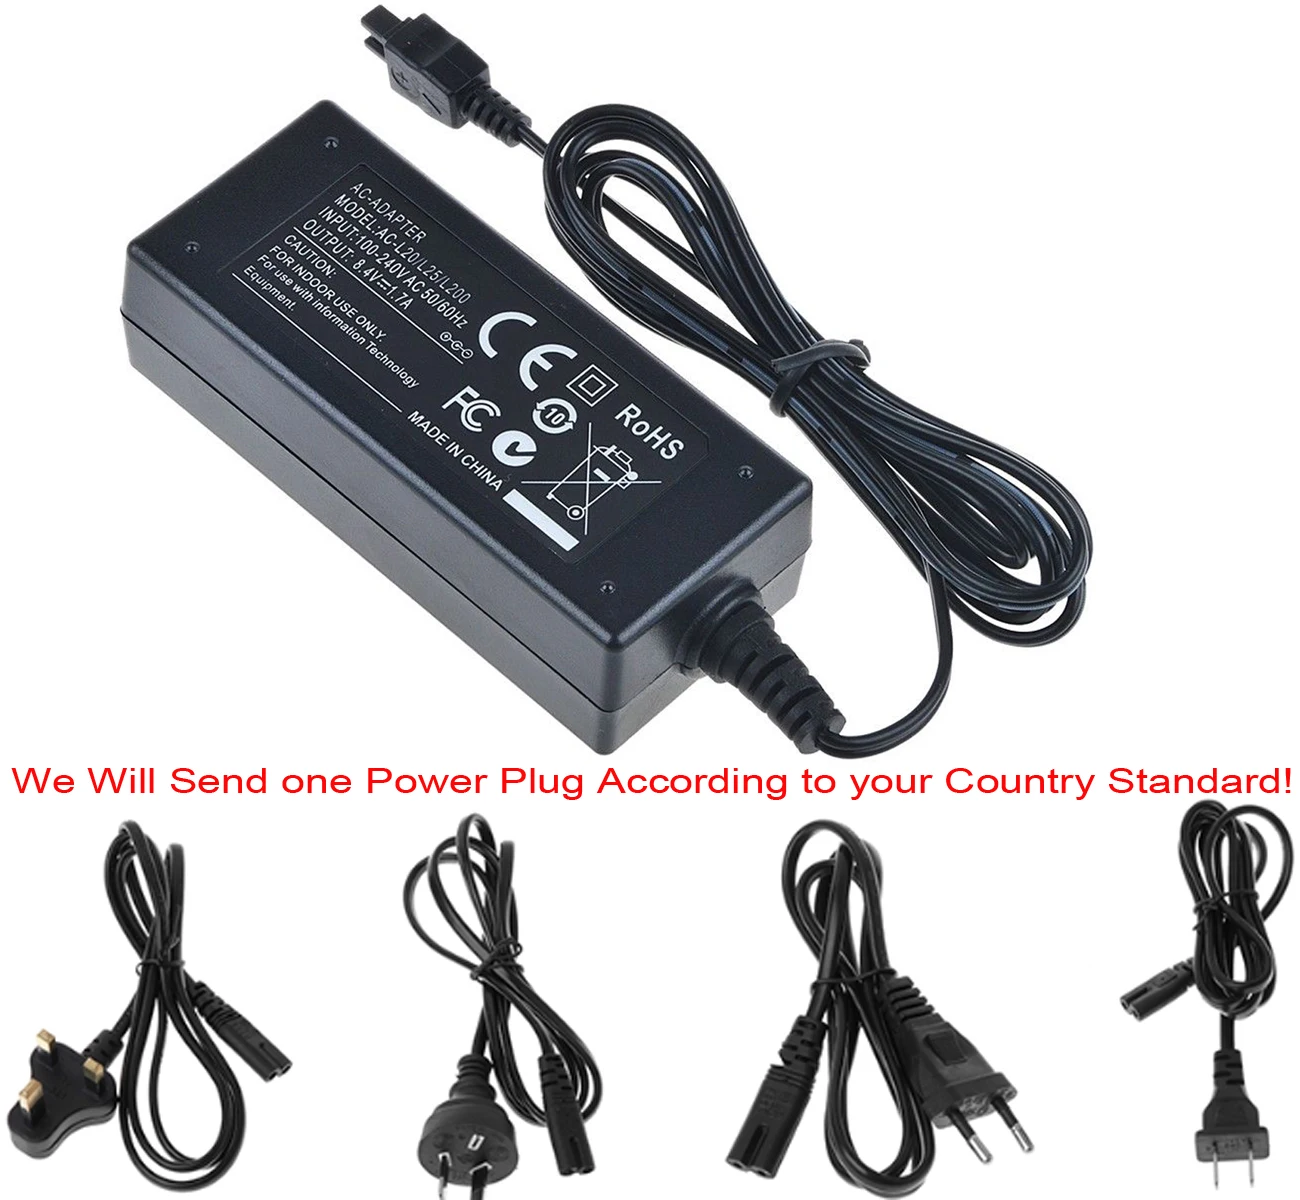 AC Мощность адаптер Зарядное устройство для sony DCR-HC51, DCR-HC52, DCR-HC53, DCR-HC54, DCR-HC62, DCR-HC65, DCR-HC85 Handycam